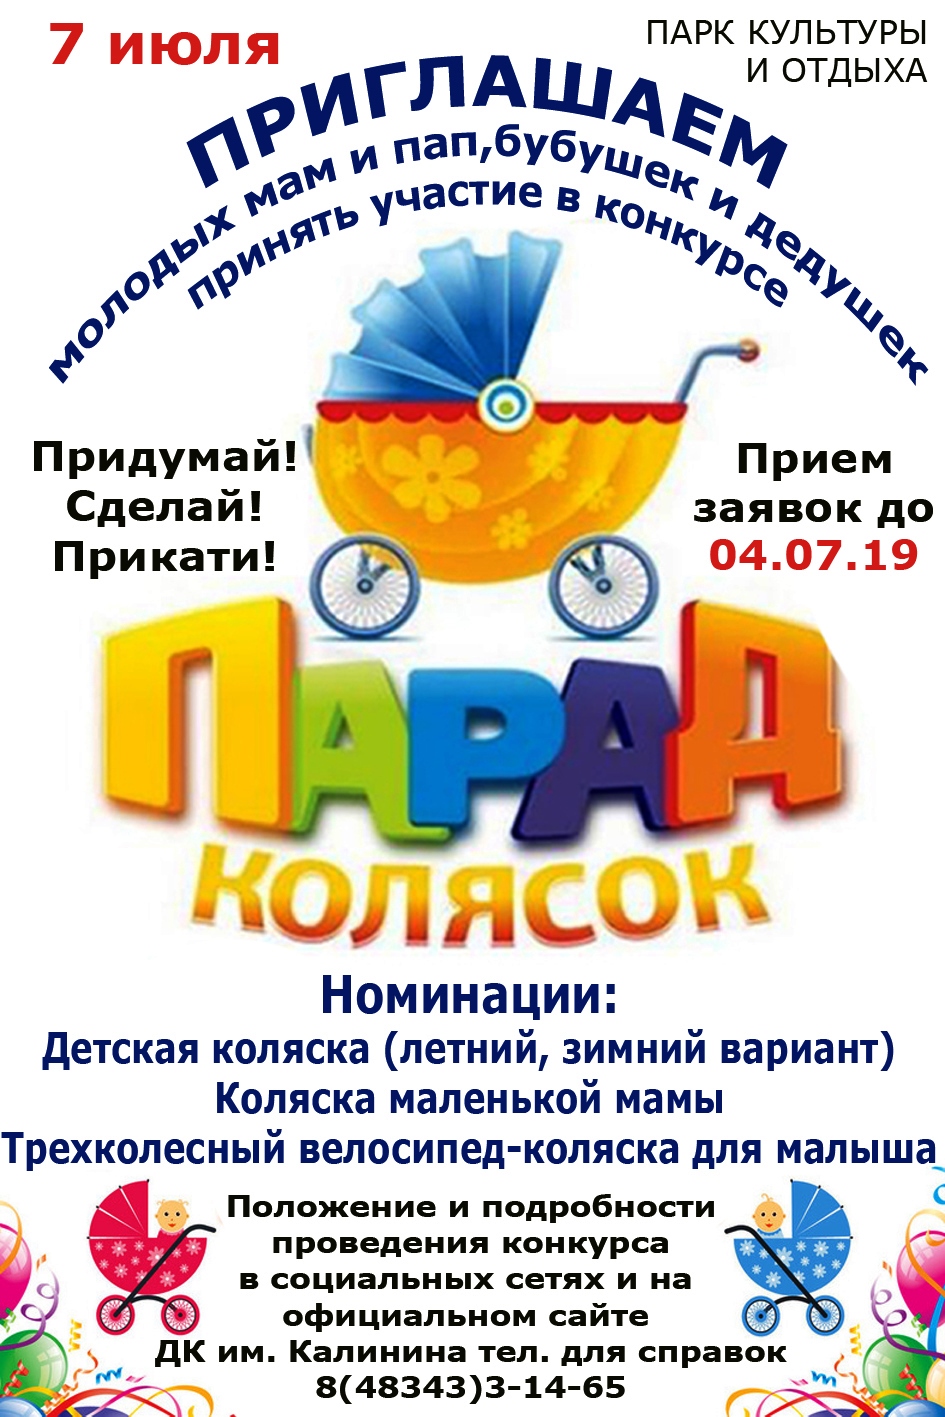 В Новозыбкове пройдет Парад колясок